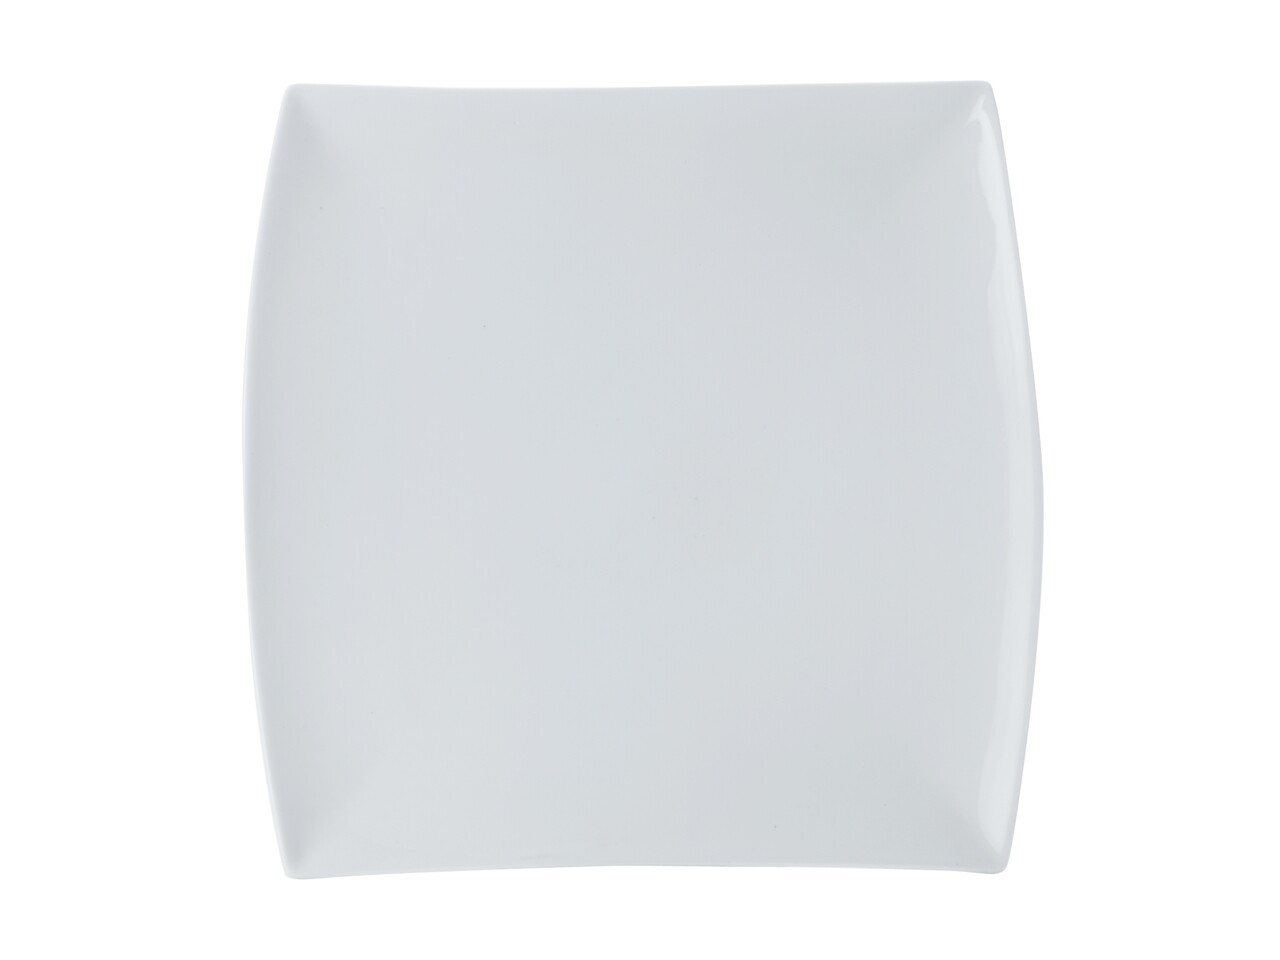 Téglalap alakú tányér, Maxwell & Williams, White Basics Square, 17 x 30 cm, porcelán, fehér